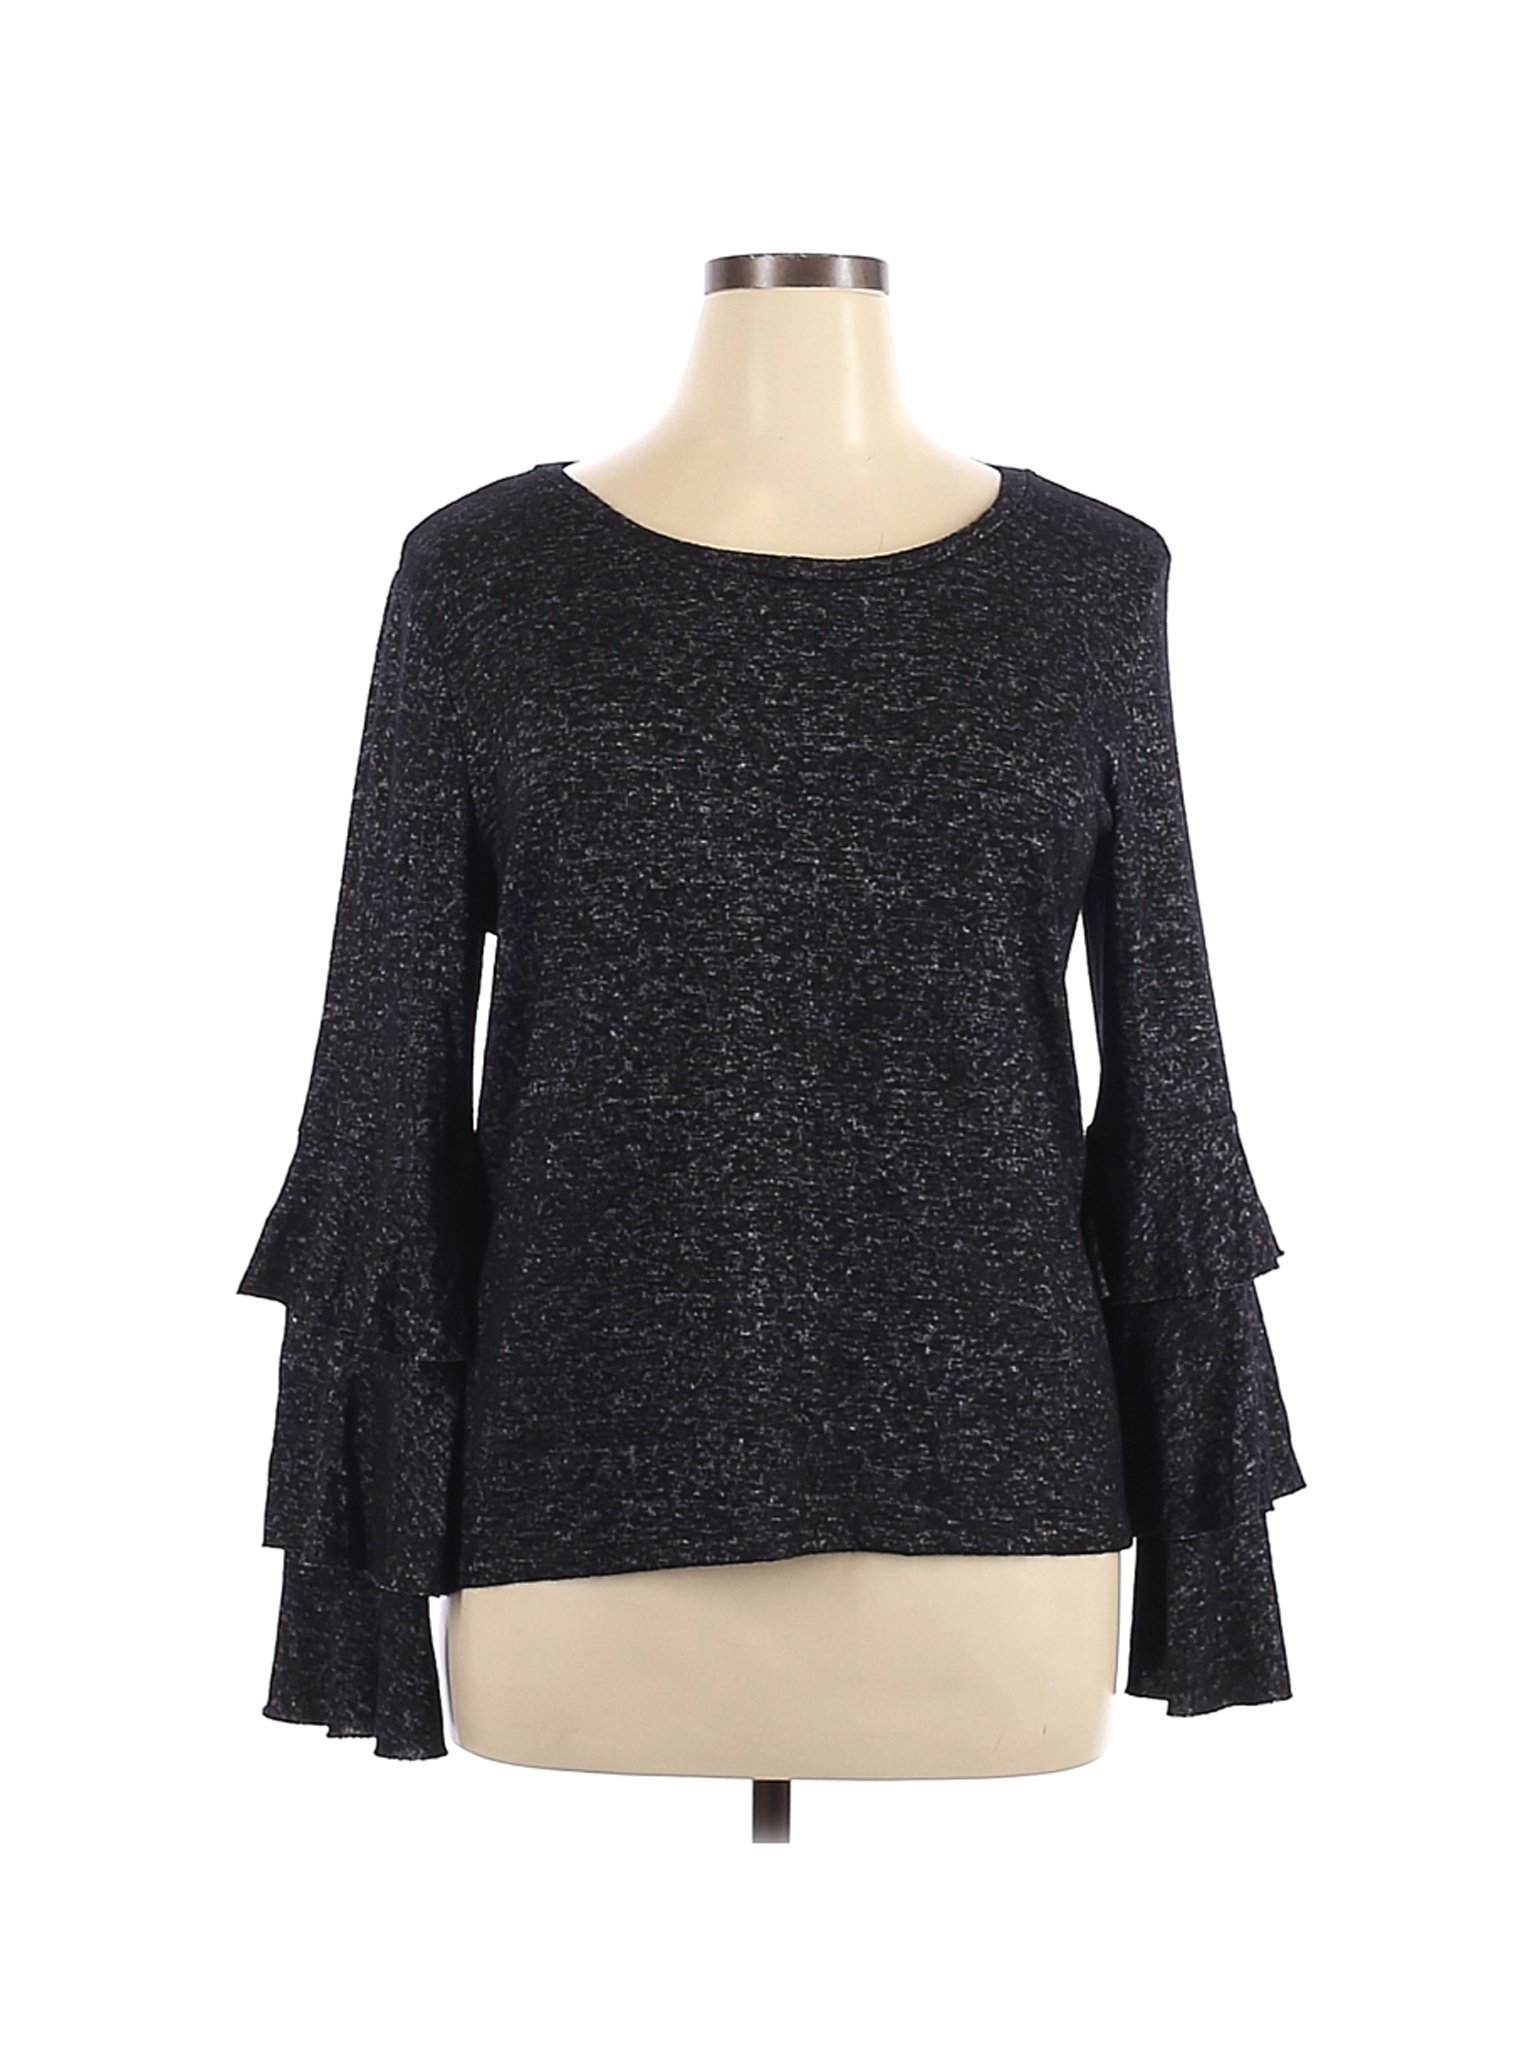 Jillian - Nicole Women Black Long Sleeve Top XL | eBay